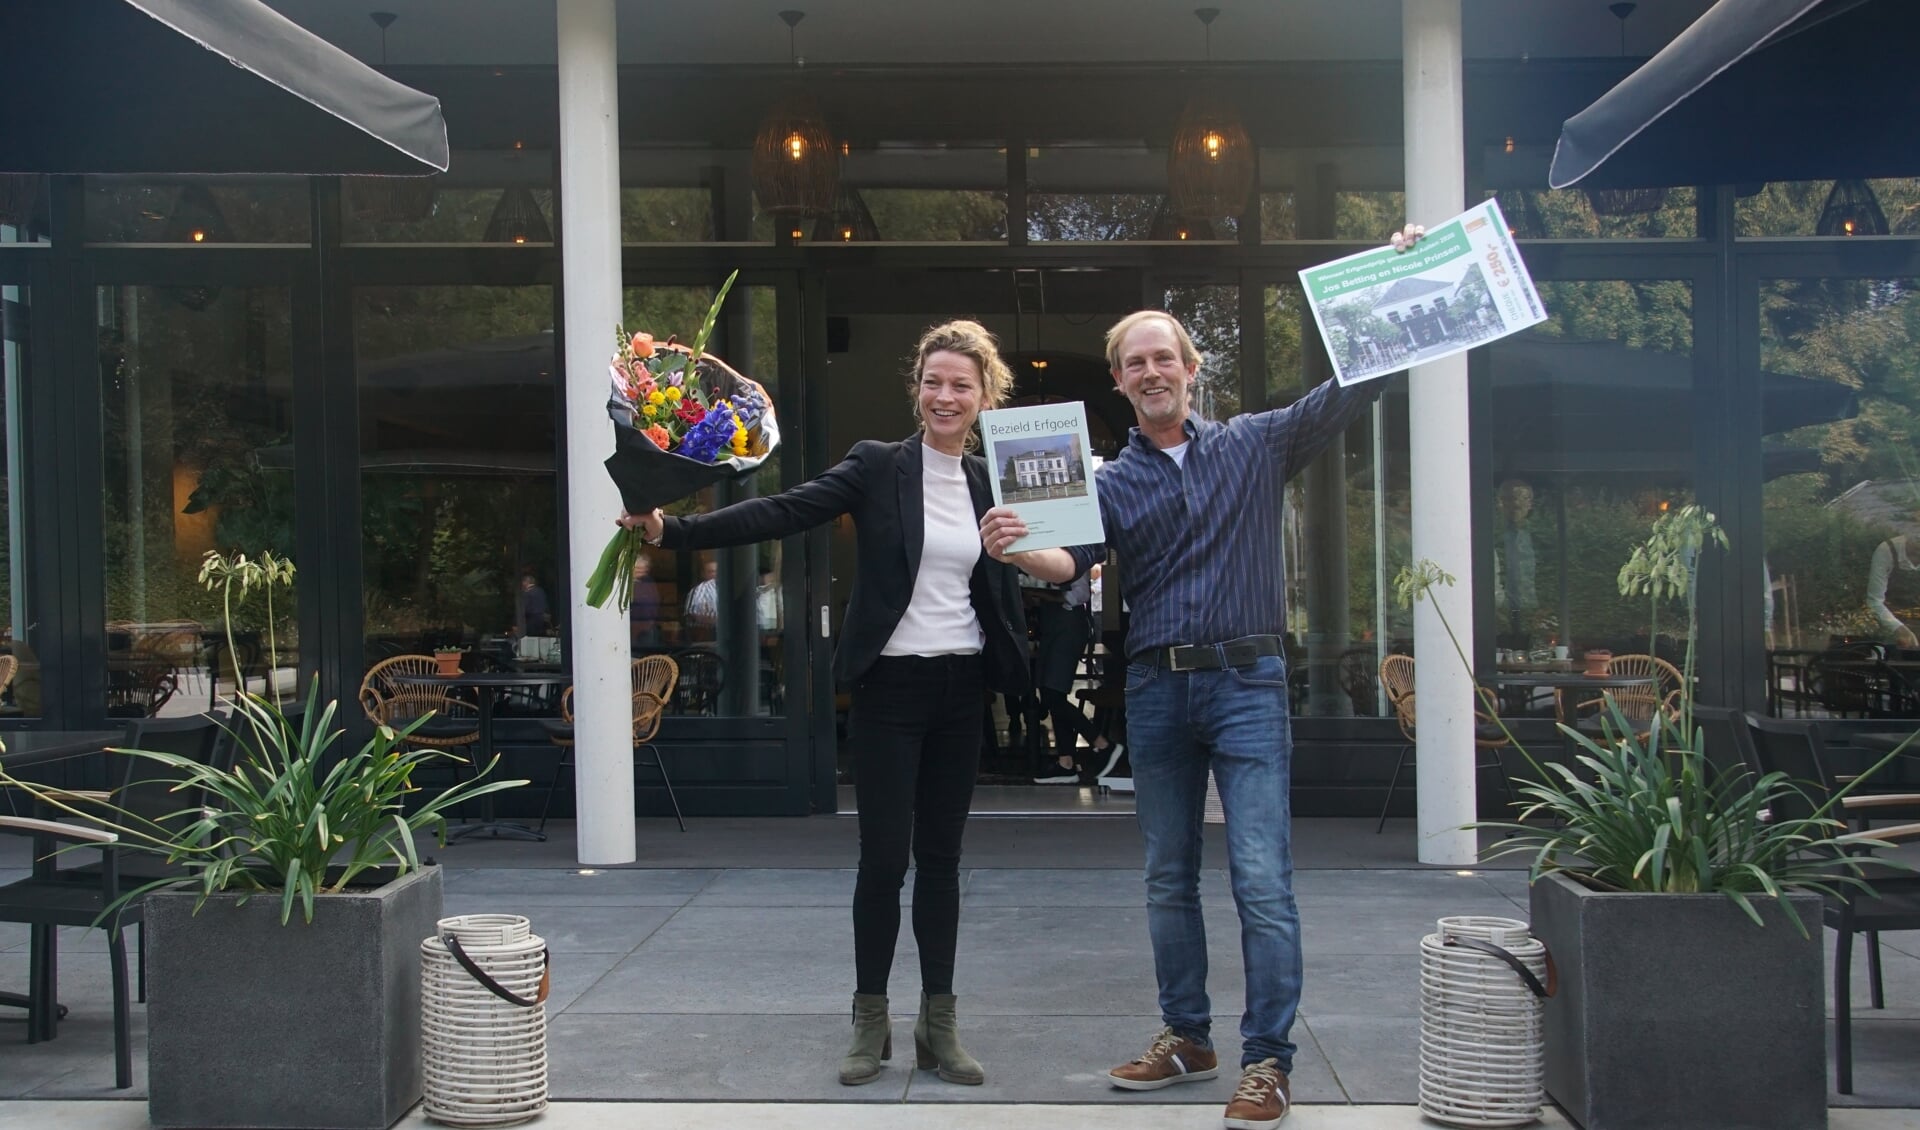 Jos Betting en Nicole Prinsen wonnen de prijs in 2020. Foto: Frank Vinkenvleugel